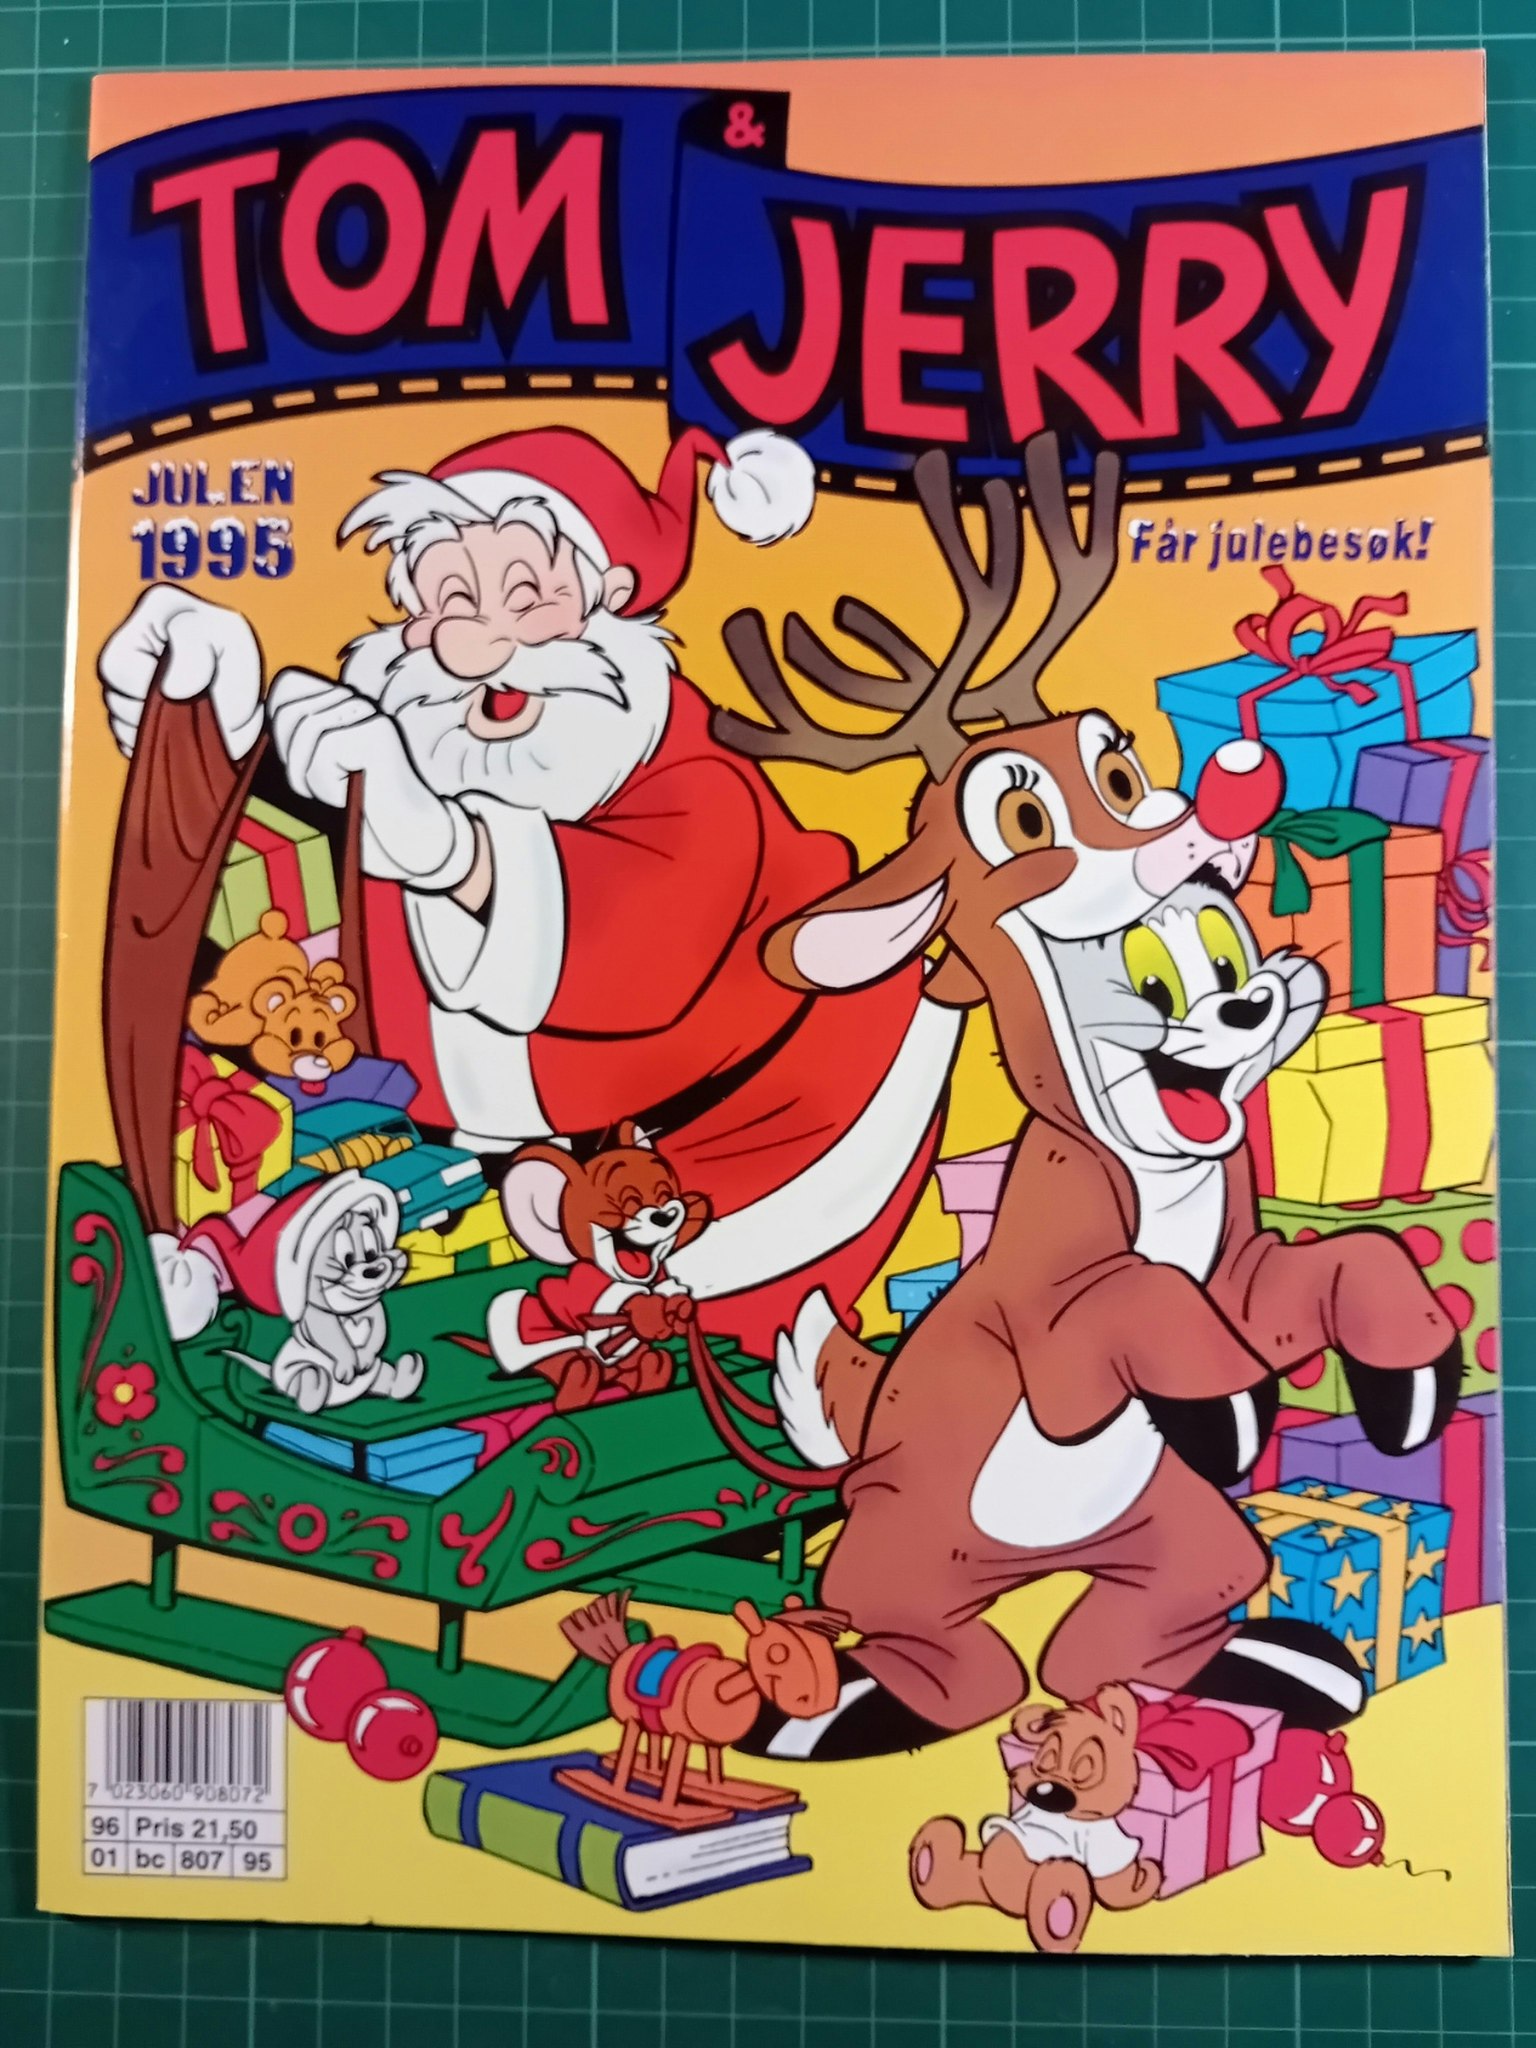 Tom & Jerry julen 1995